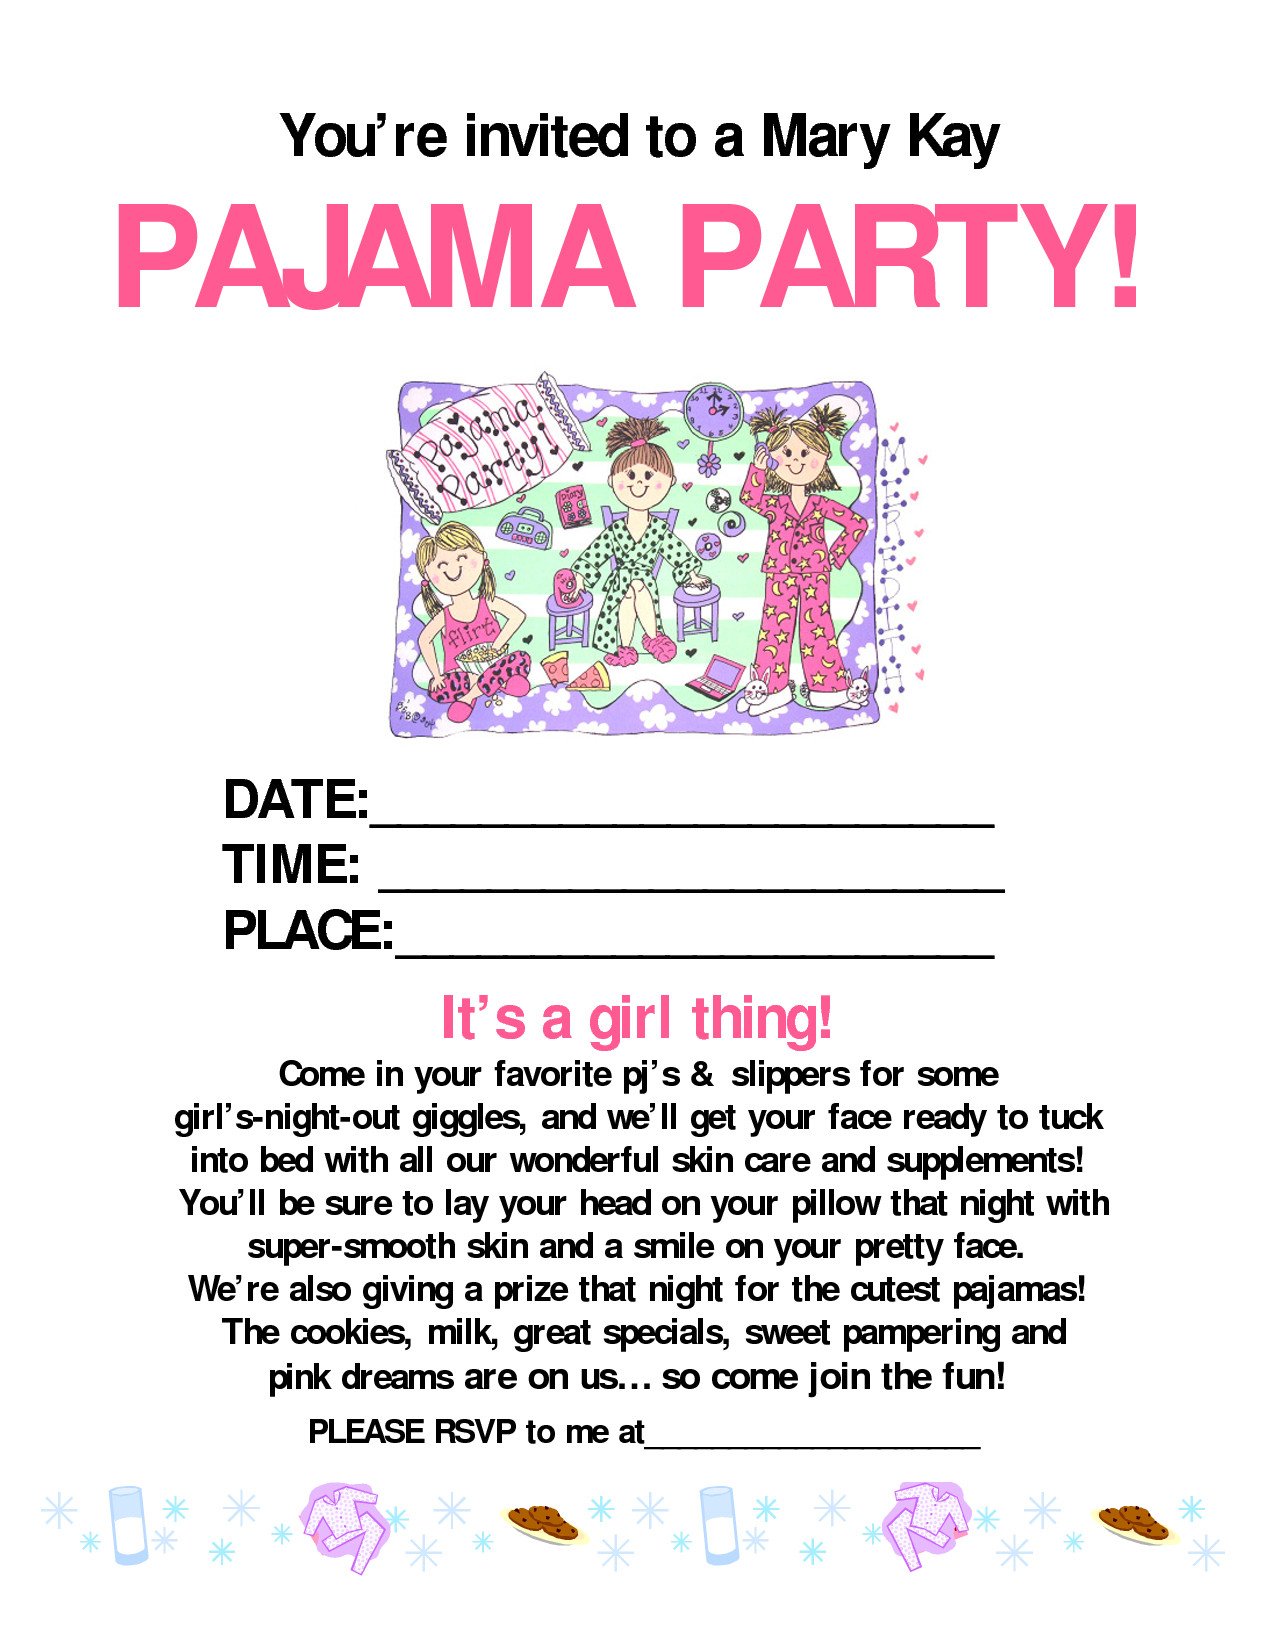 pajama party mary kay MARY KAY Pinterest